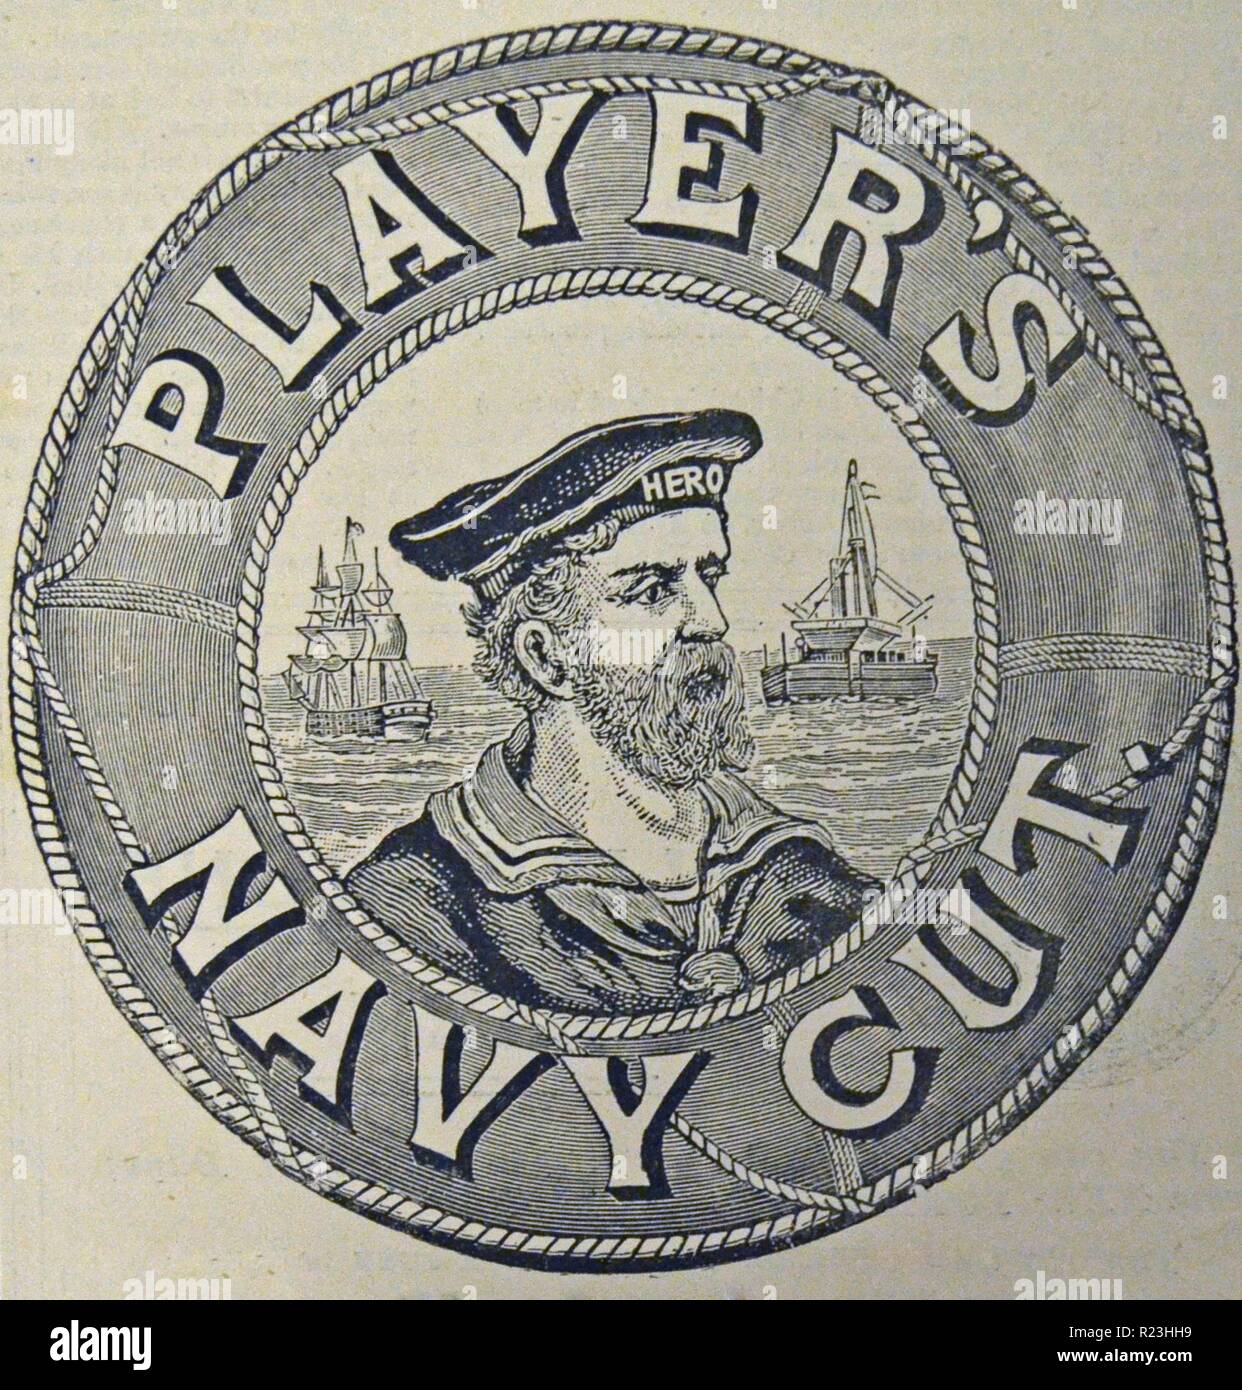 Annonce de ''l'Illustrated London News'', 1895, de 'Player's Navy Cut' le tabac et les cigarettes fabriquées à Nottingham. Banque D'Images